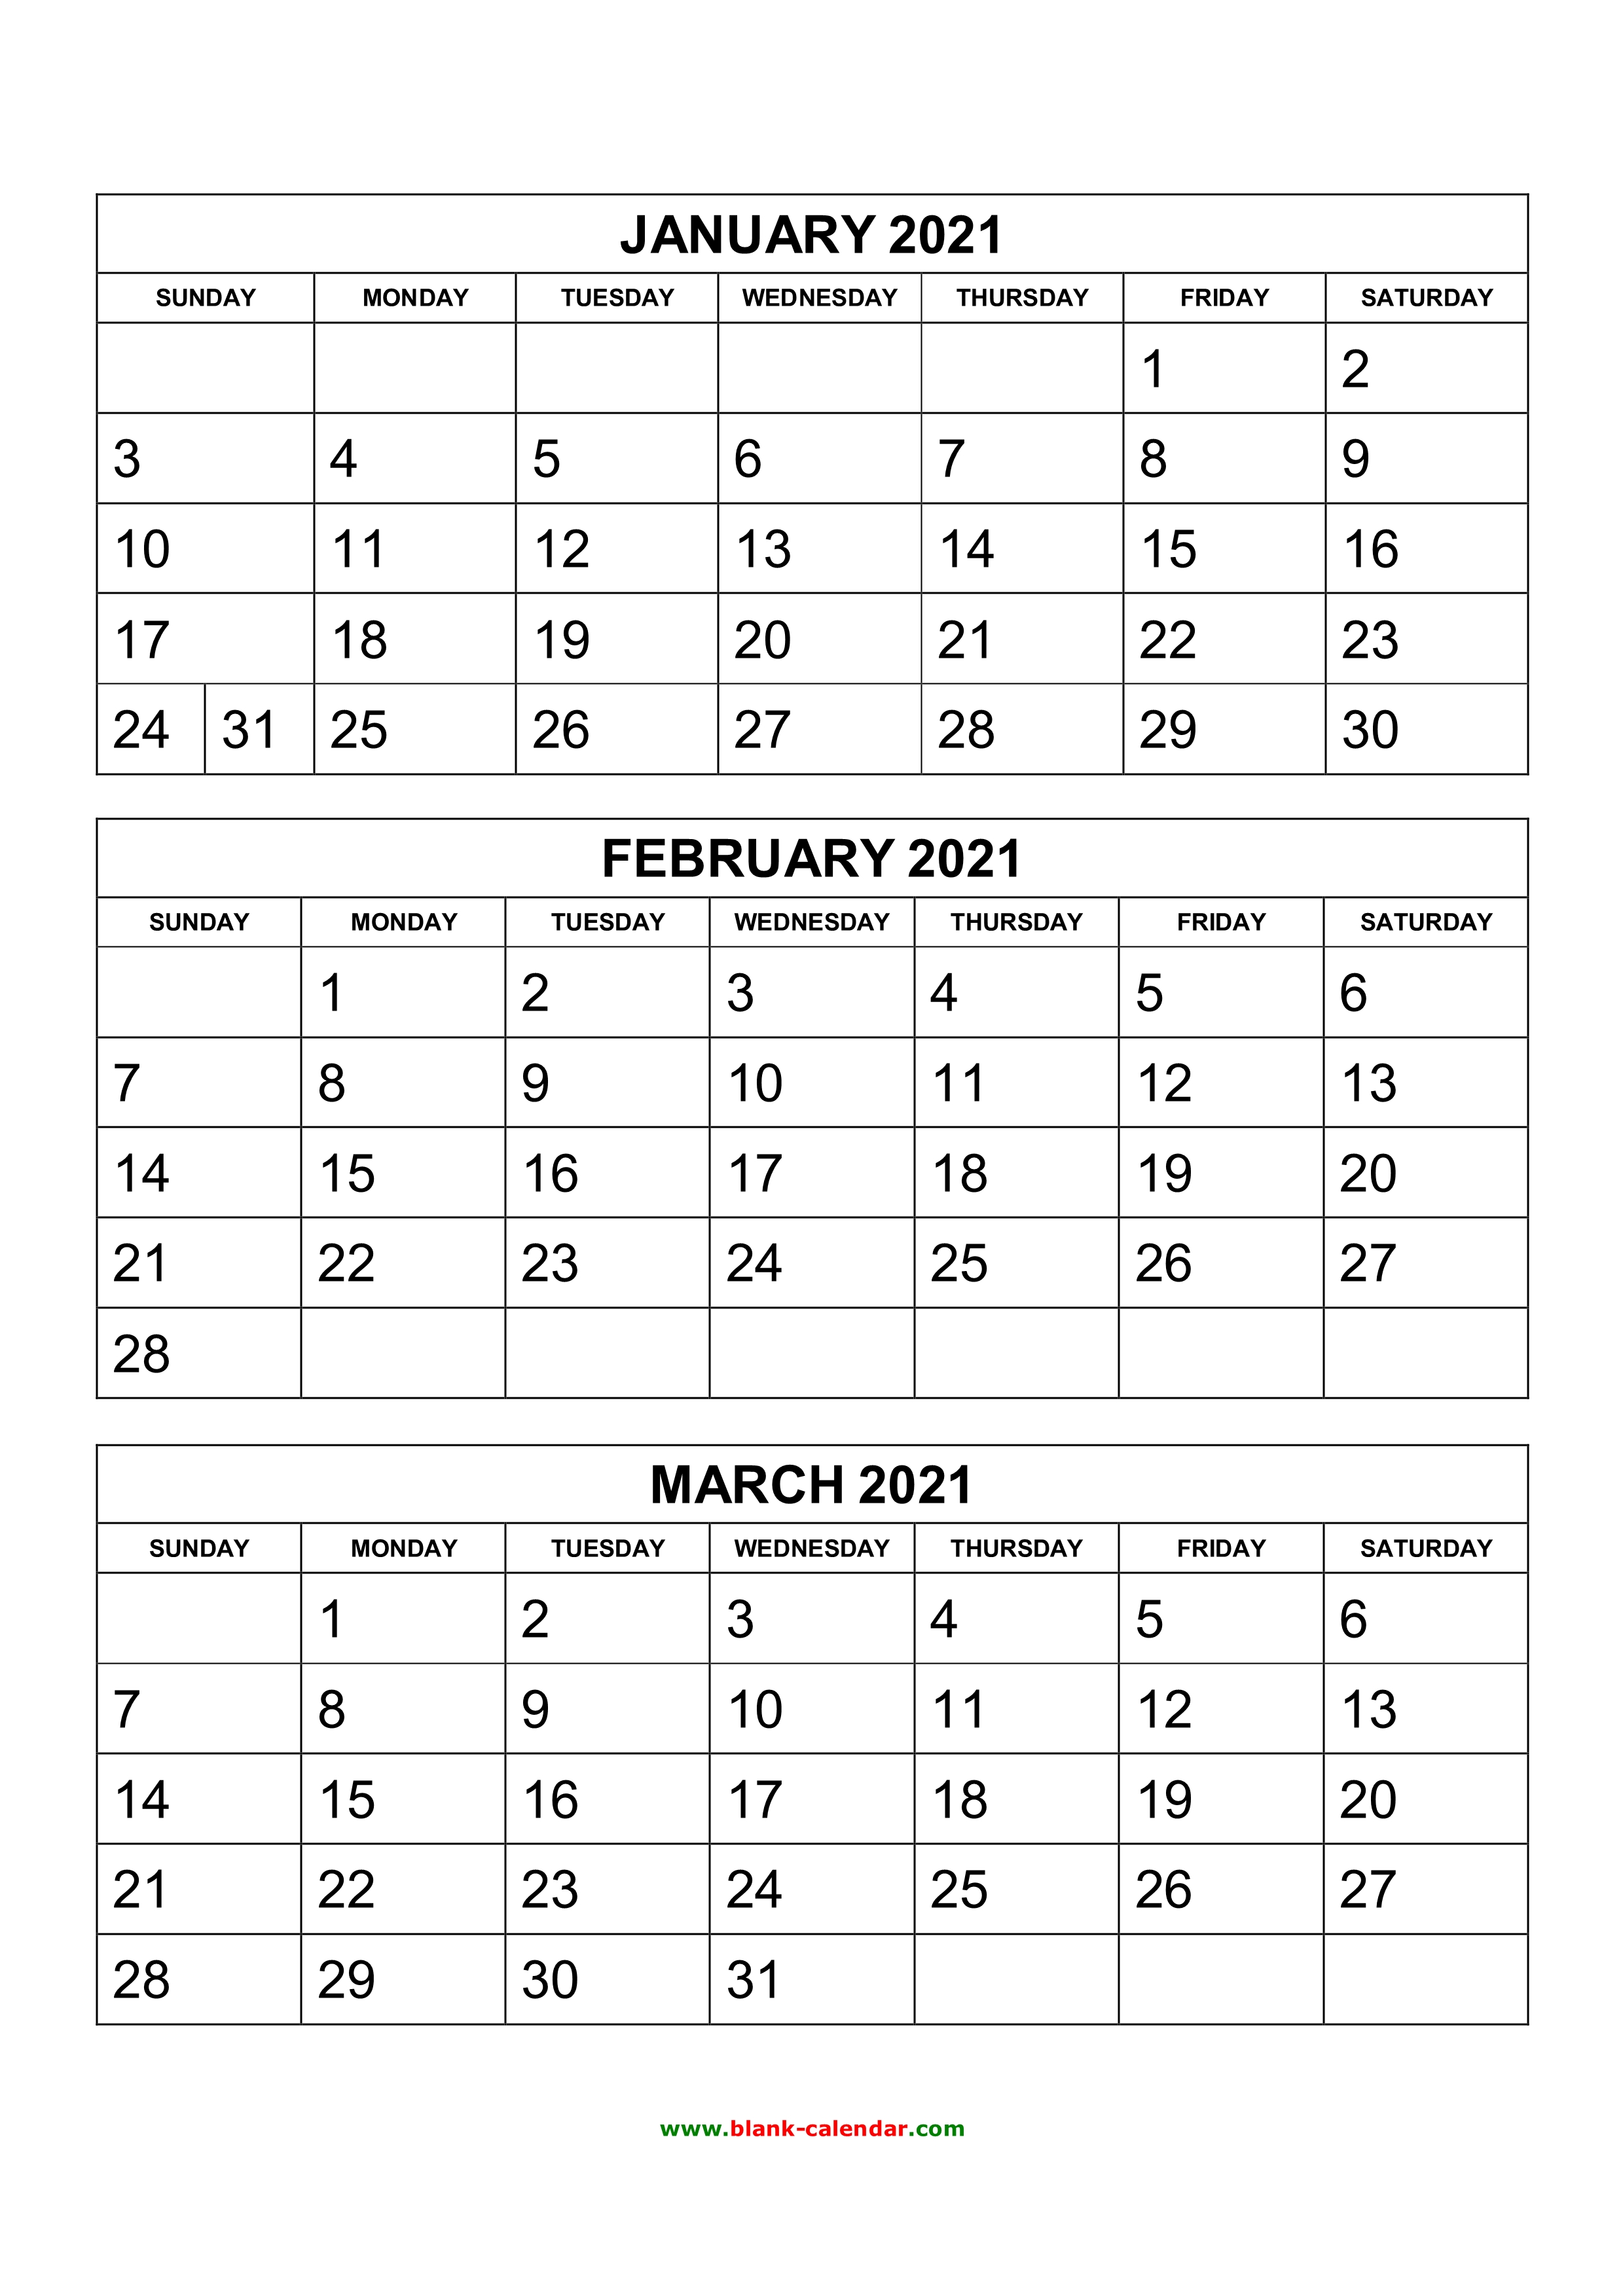 Calendar 2021 3 Months Per Page 2021 Calendar